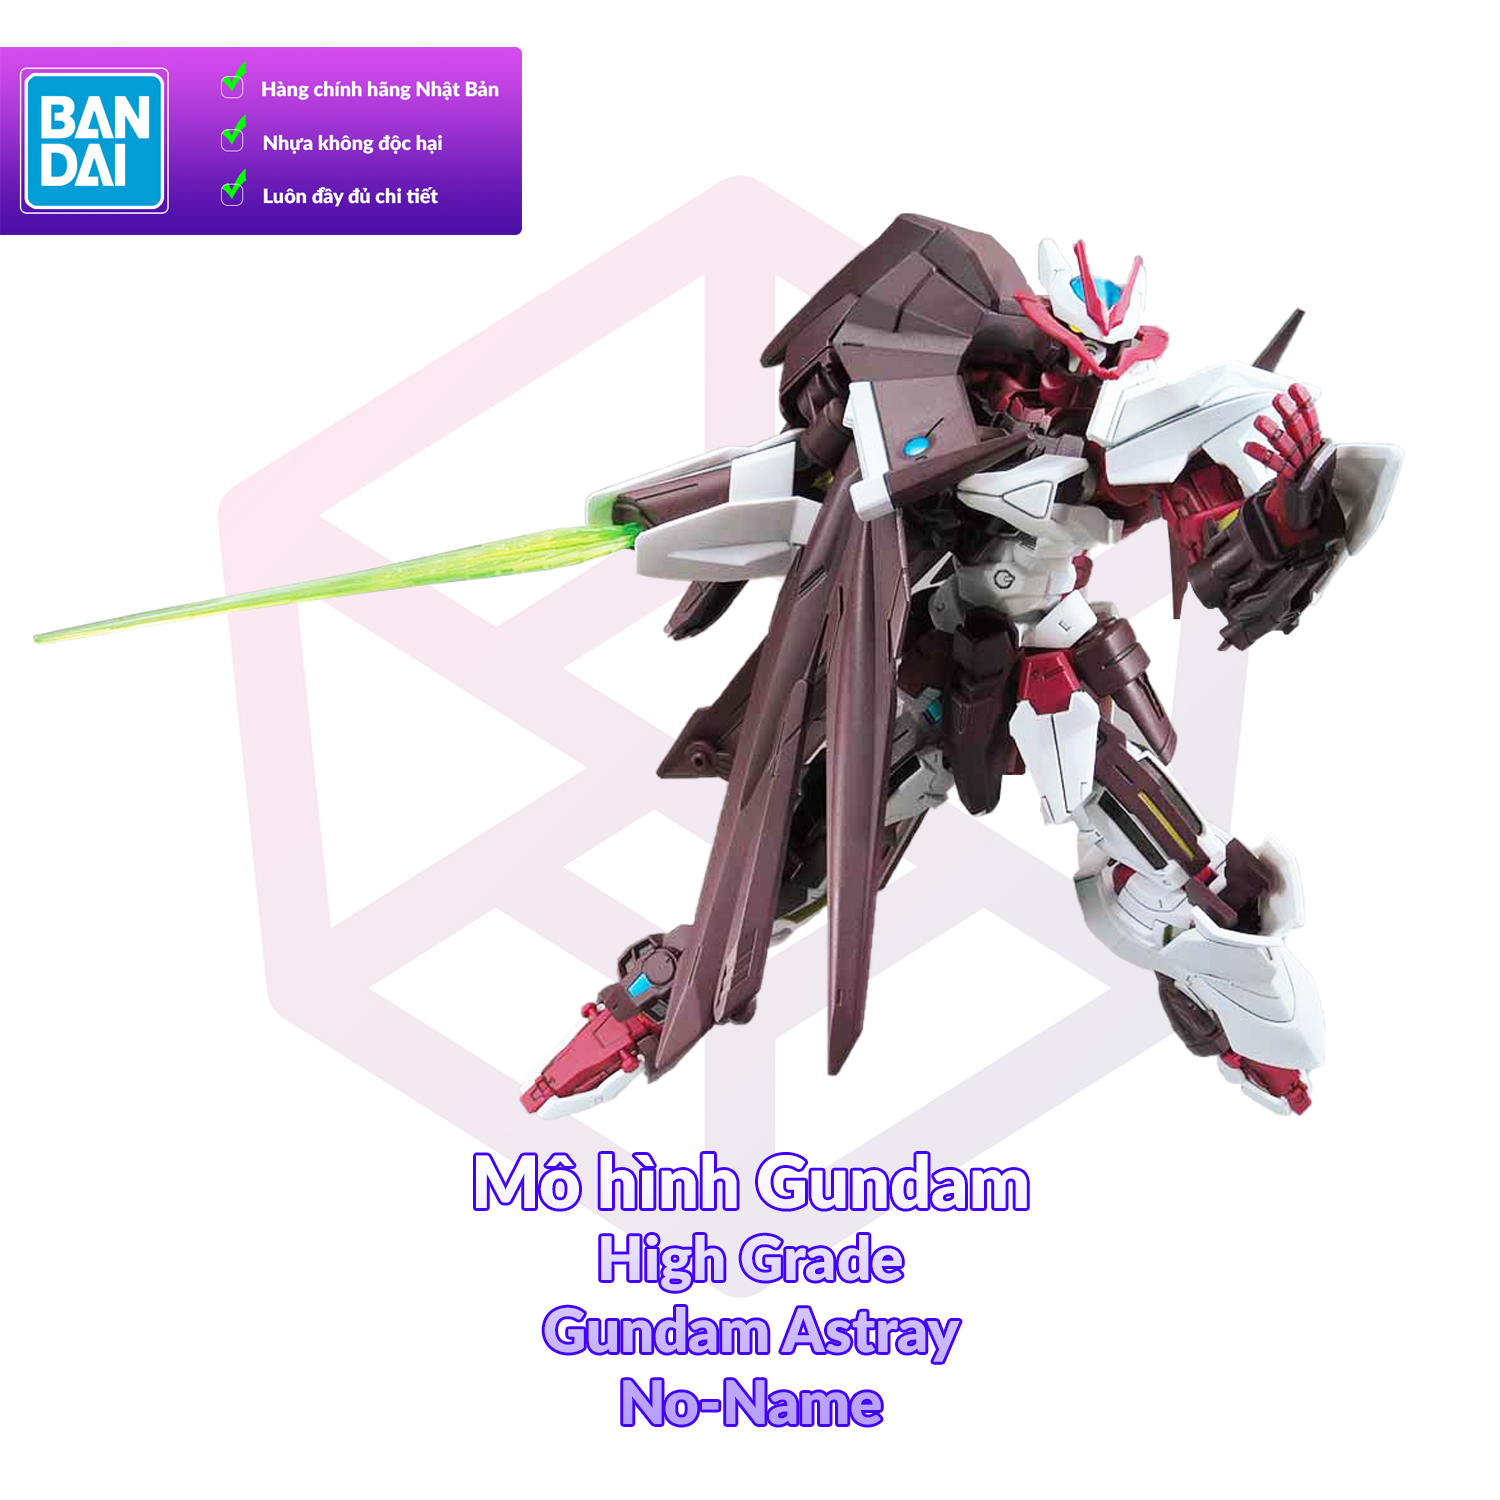 Tổng Hợp Gundam Astray Noname Giá Rẻ, Bán Chạy Tháng 9/2023 - Beecost